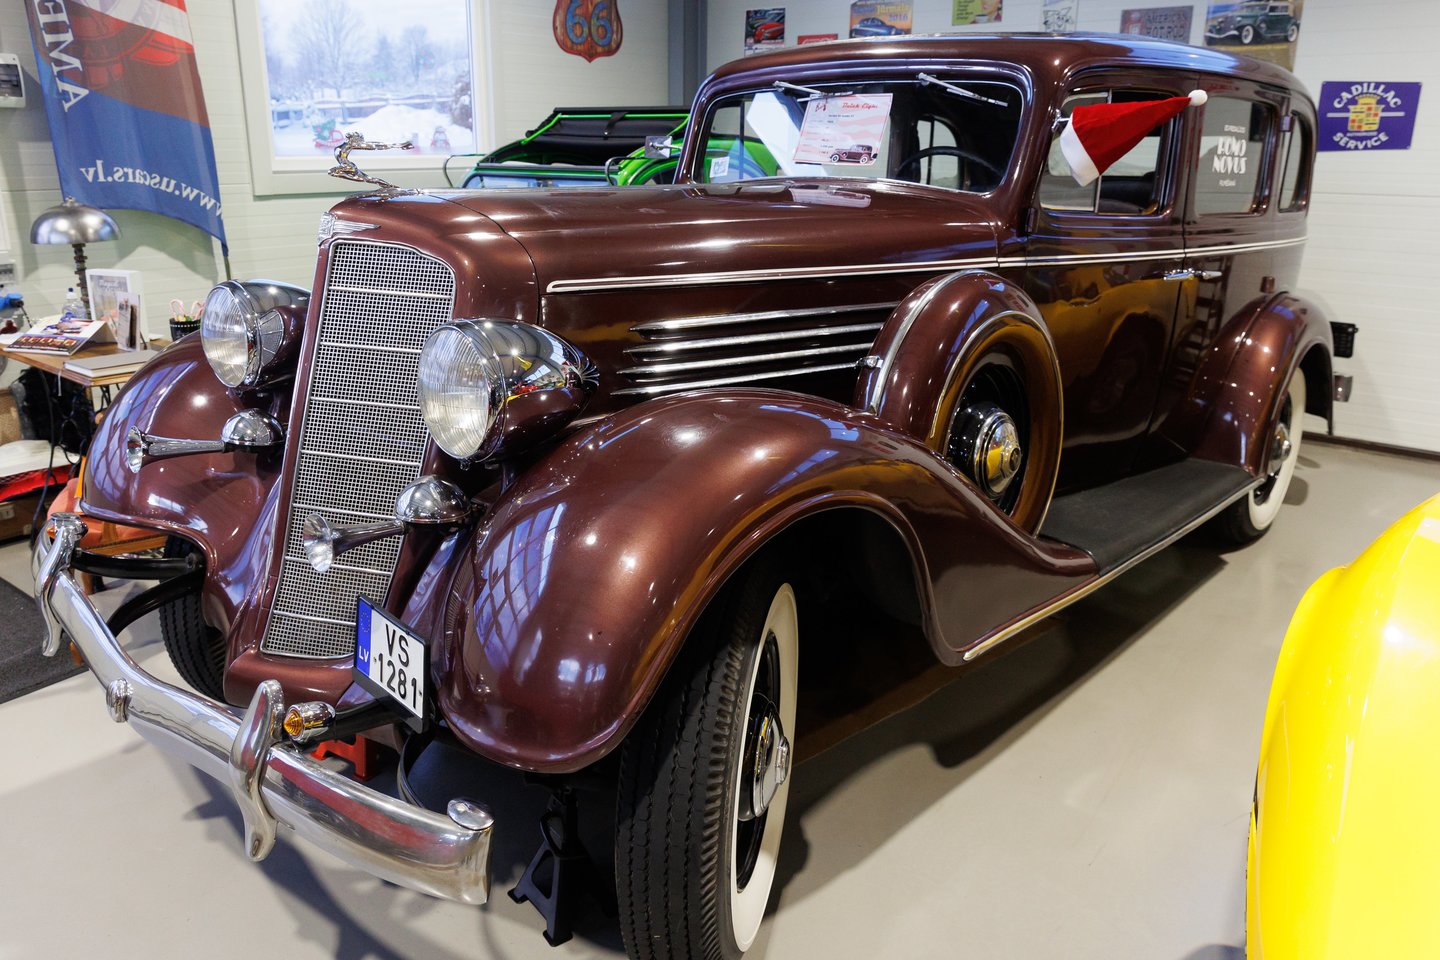 A.Ozuolinio muziejuje apstu ir sovietinių motociklų ar mopedų, ir panašaus laikotarpio amerikinių automobilių.<br> T.Bauro nuotr.